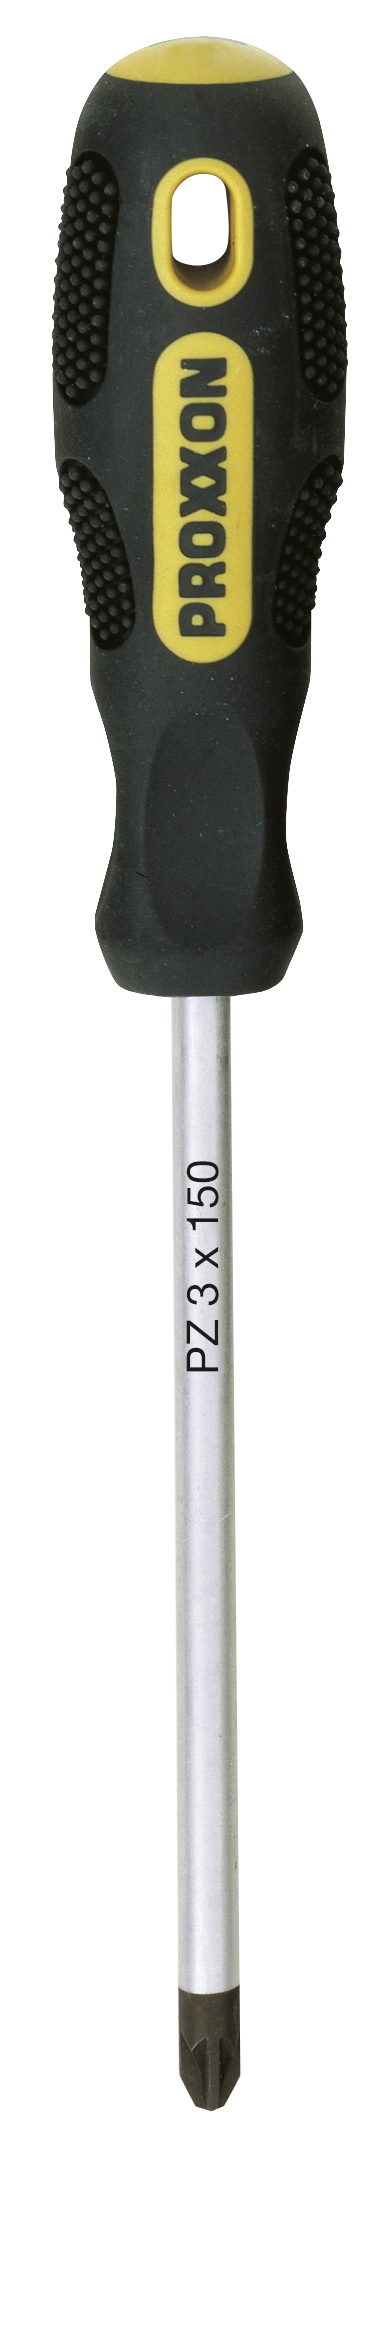 Tournevis FLEX-DOT cruciforme PZ 3 x 150 PROXXON